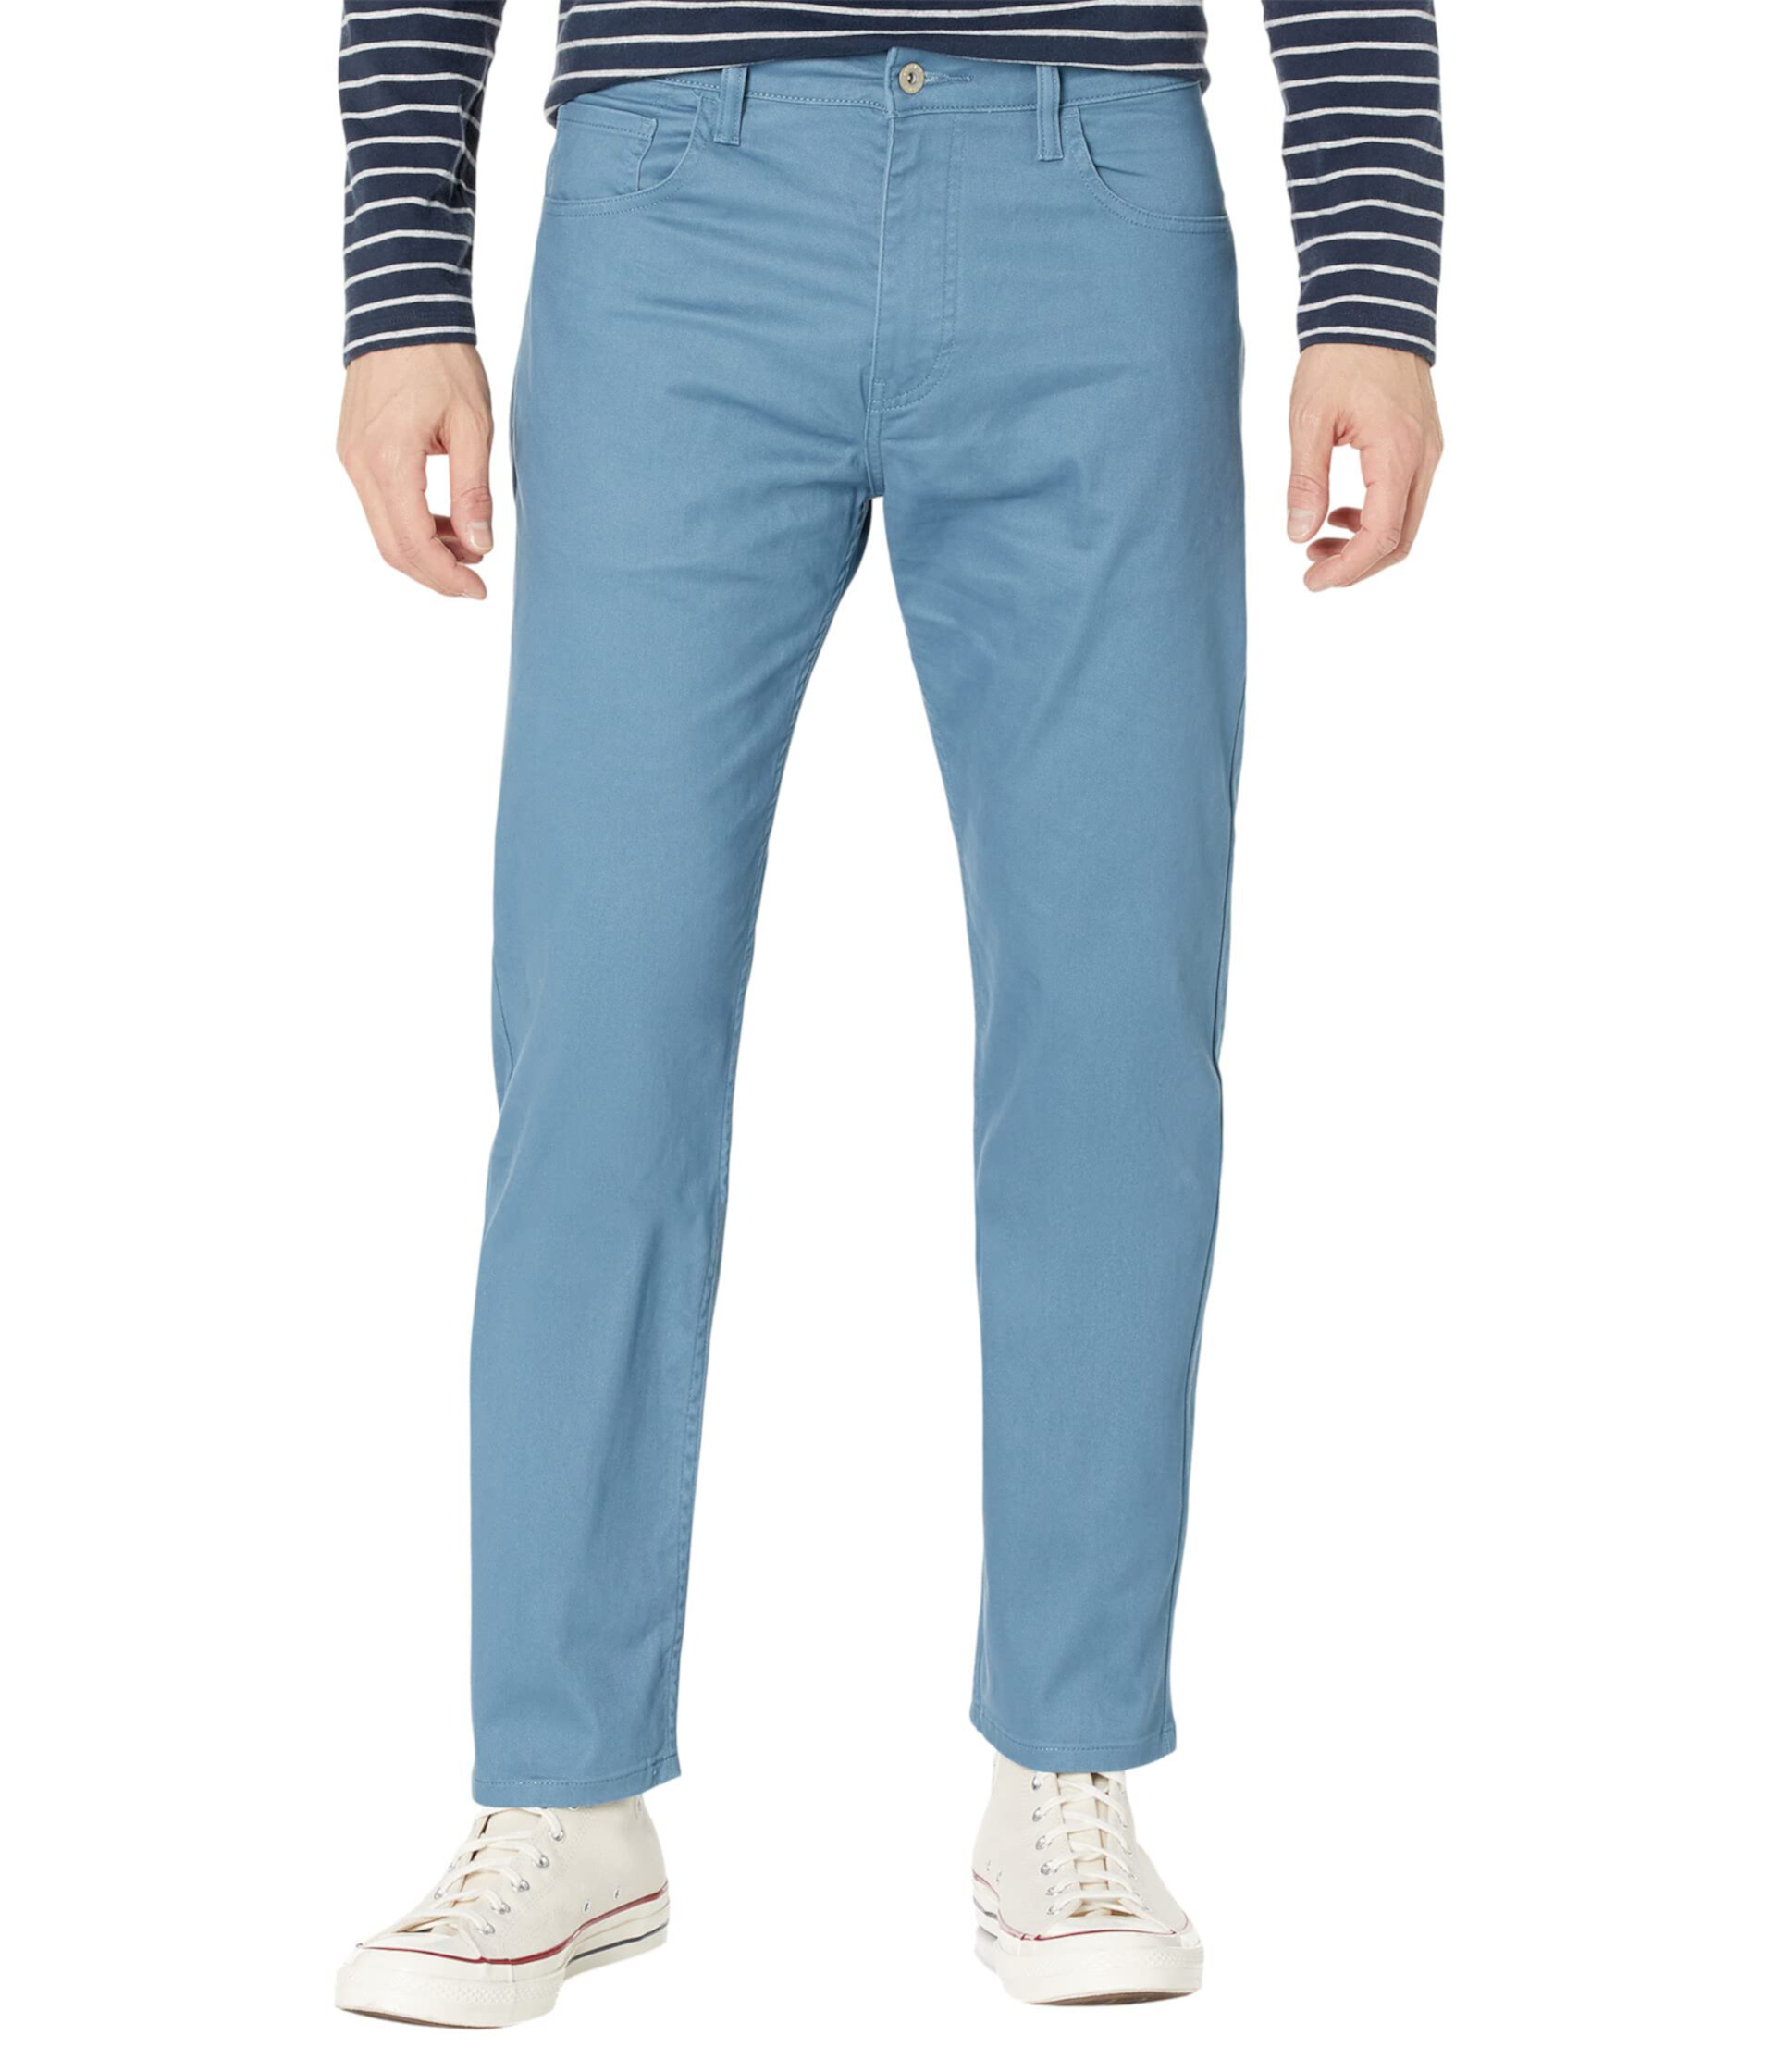 Прямые джинсы Dockers для мужчин из категории повседневные брюки Dockers